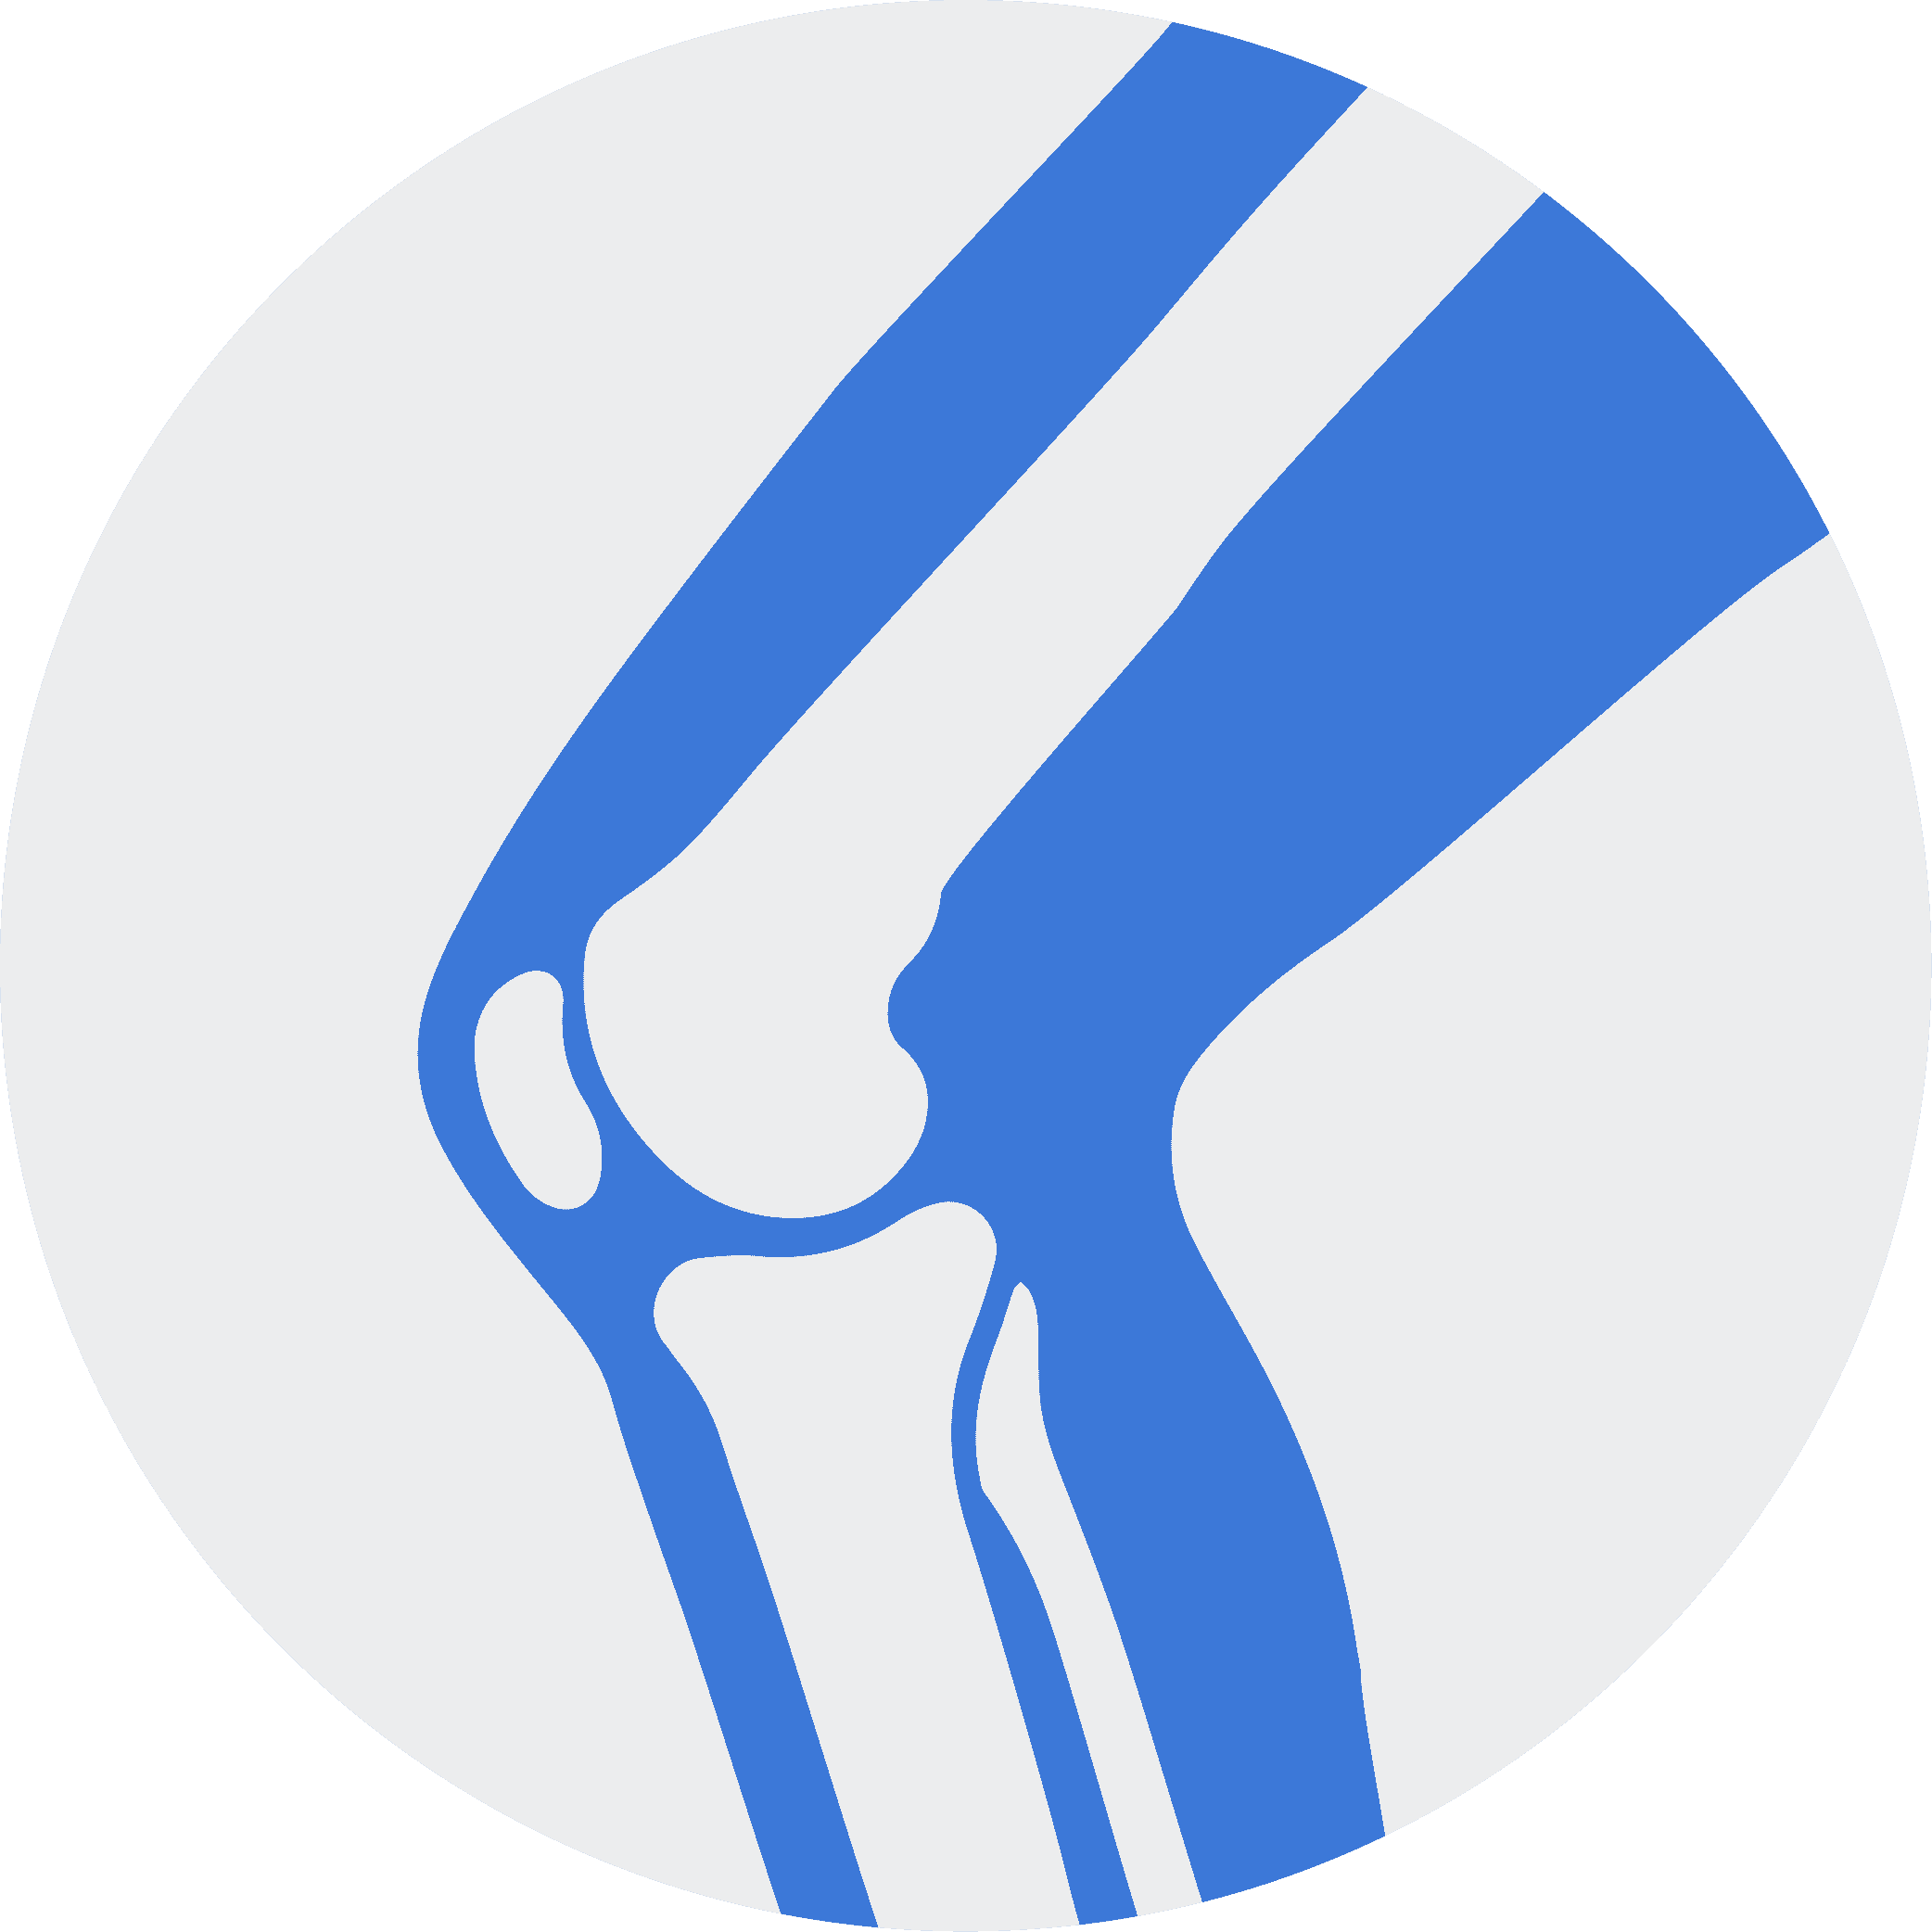 knee icon with bones